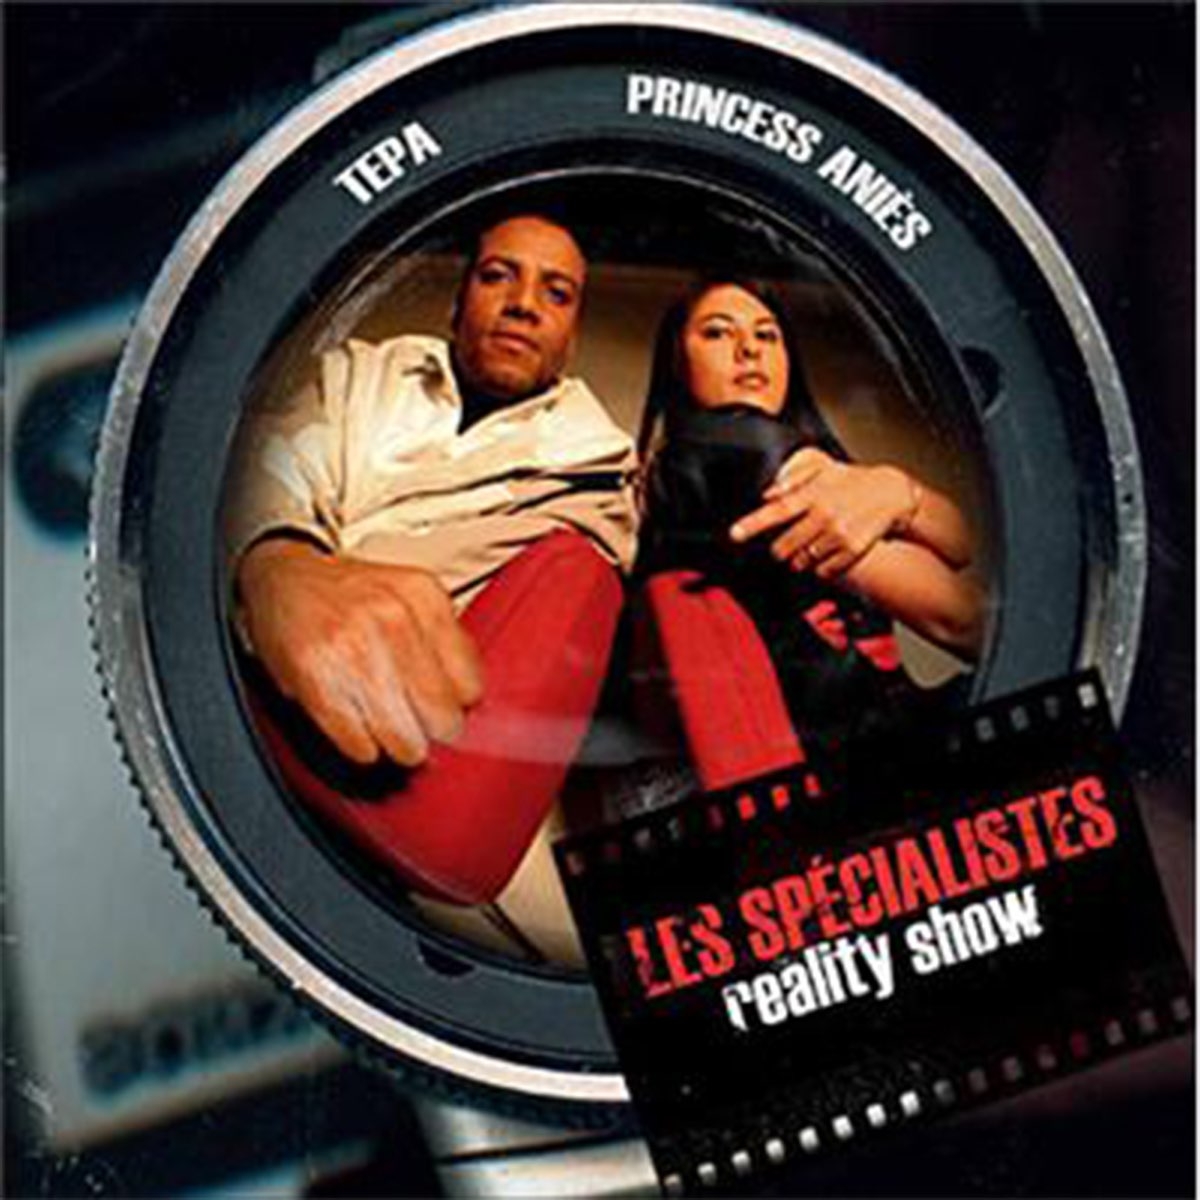 Album vinyle Les specialistes - Reality Show de sur Scredboutique.com